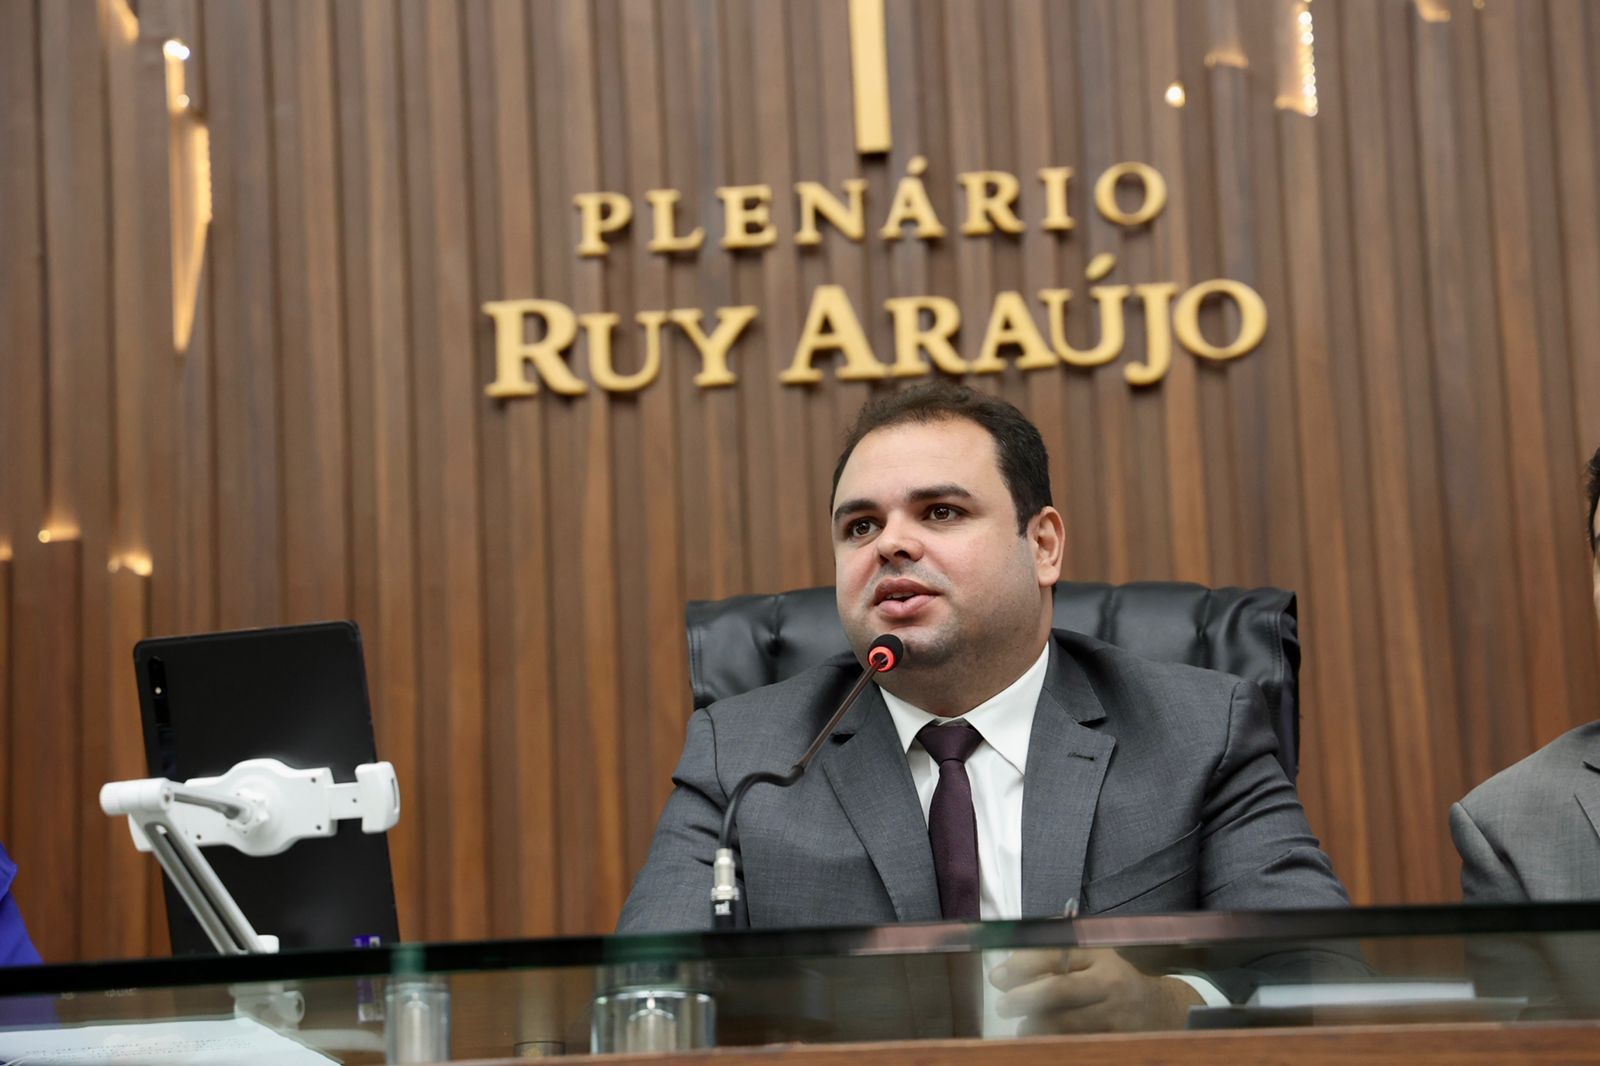 Roberto Cidade propõe PL que obriga condutor embriagado a arcar com despesas de patrimônio público em caso de acidente